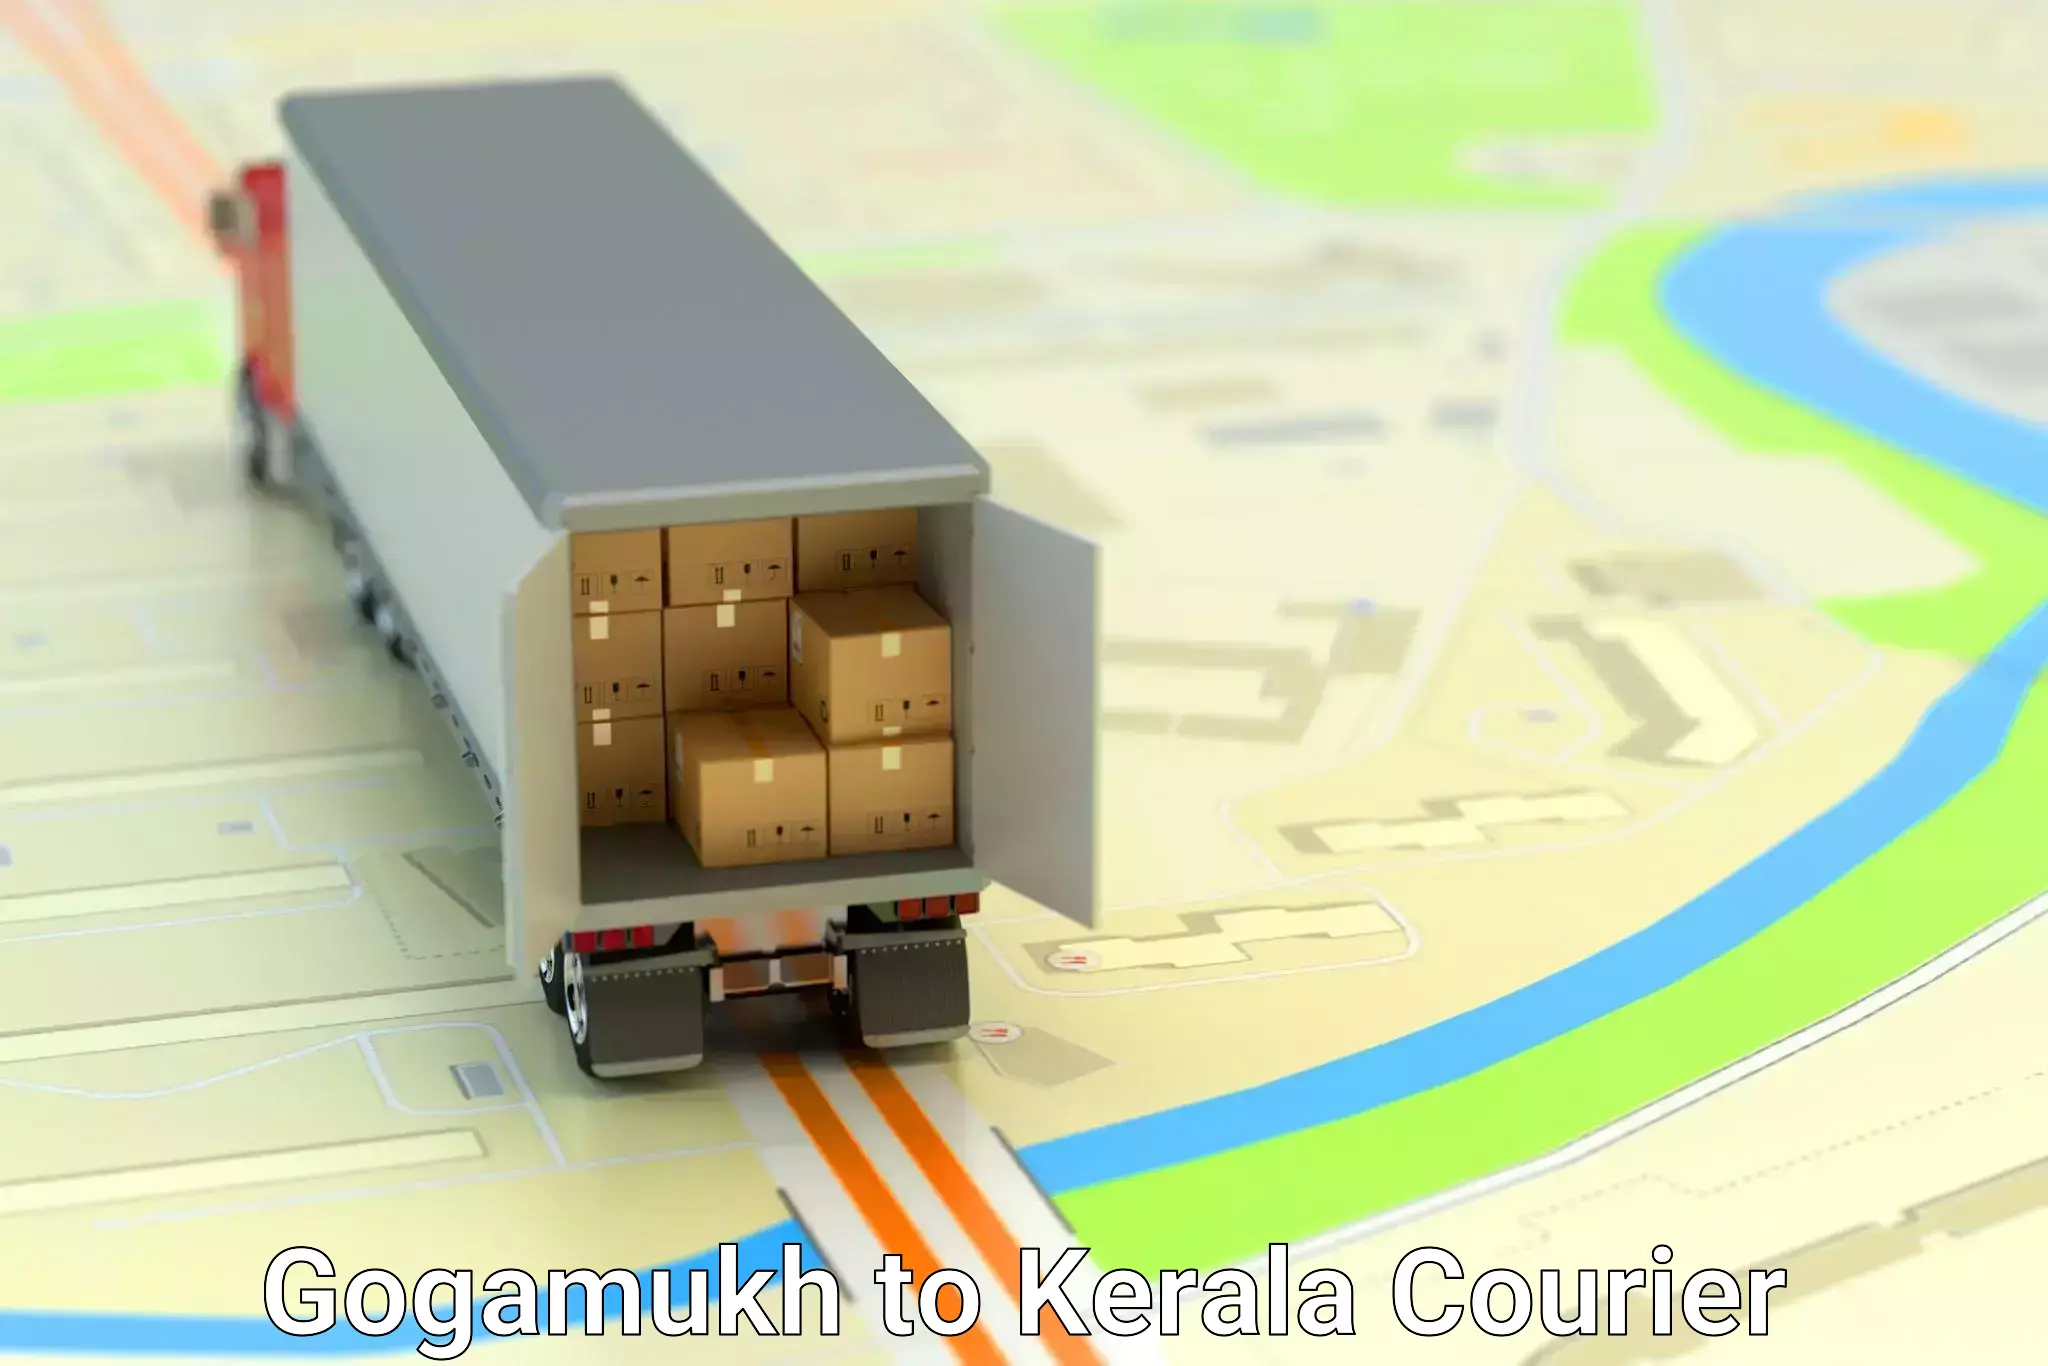 Efficient cargo handling Gogamukh to Kerala